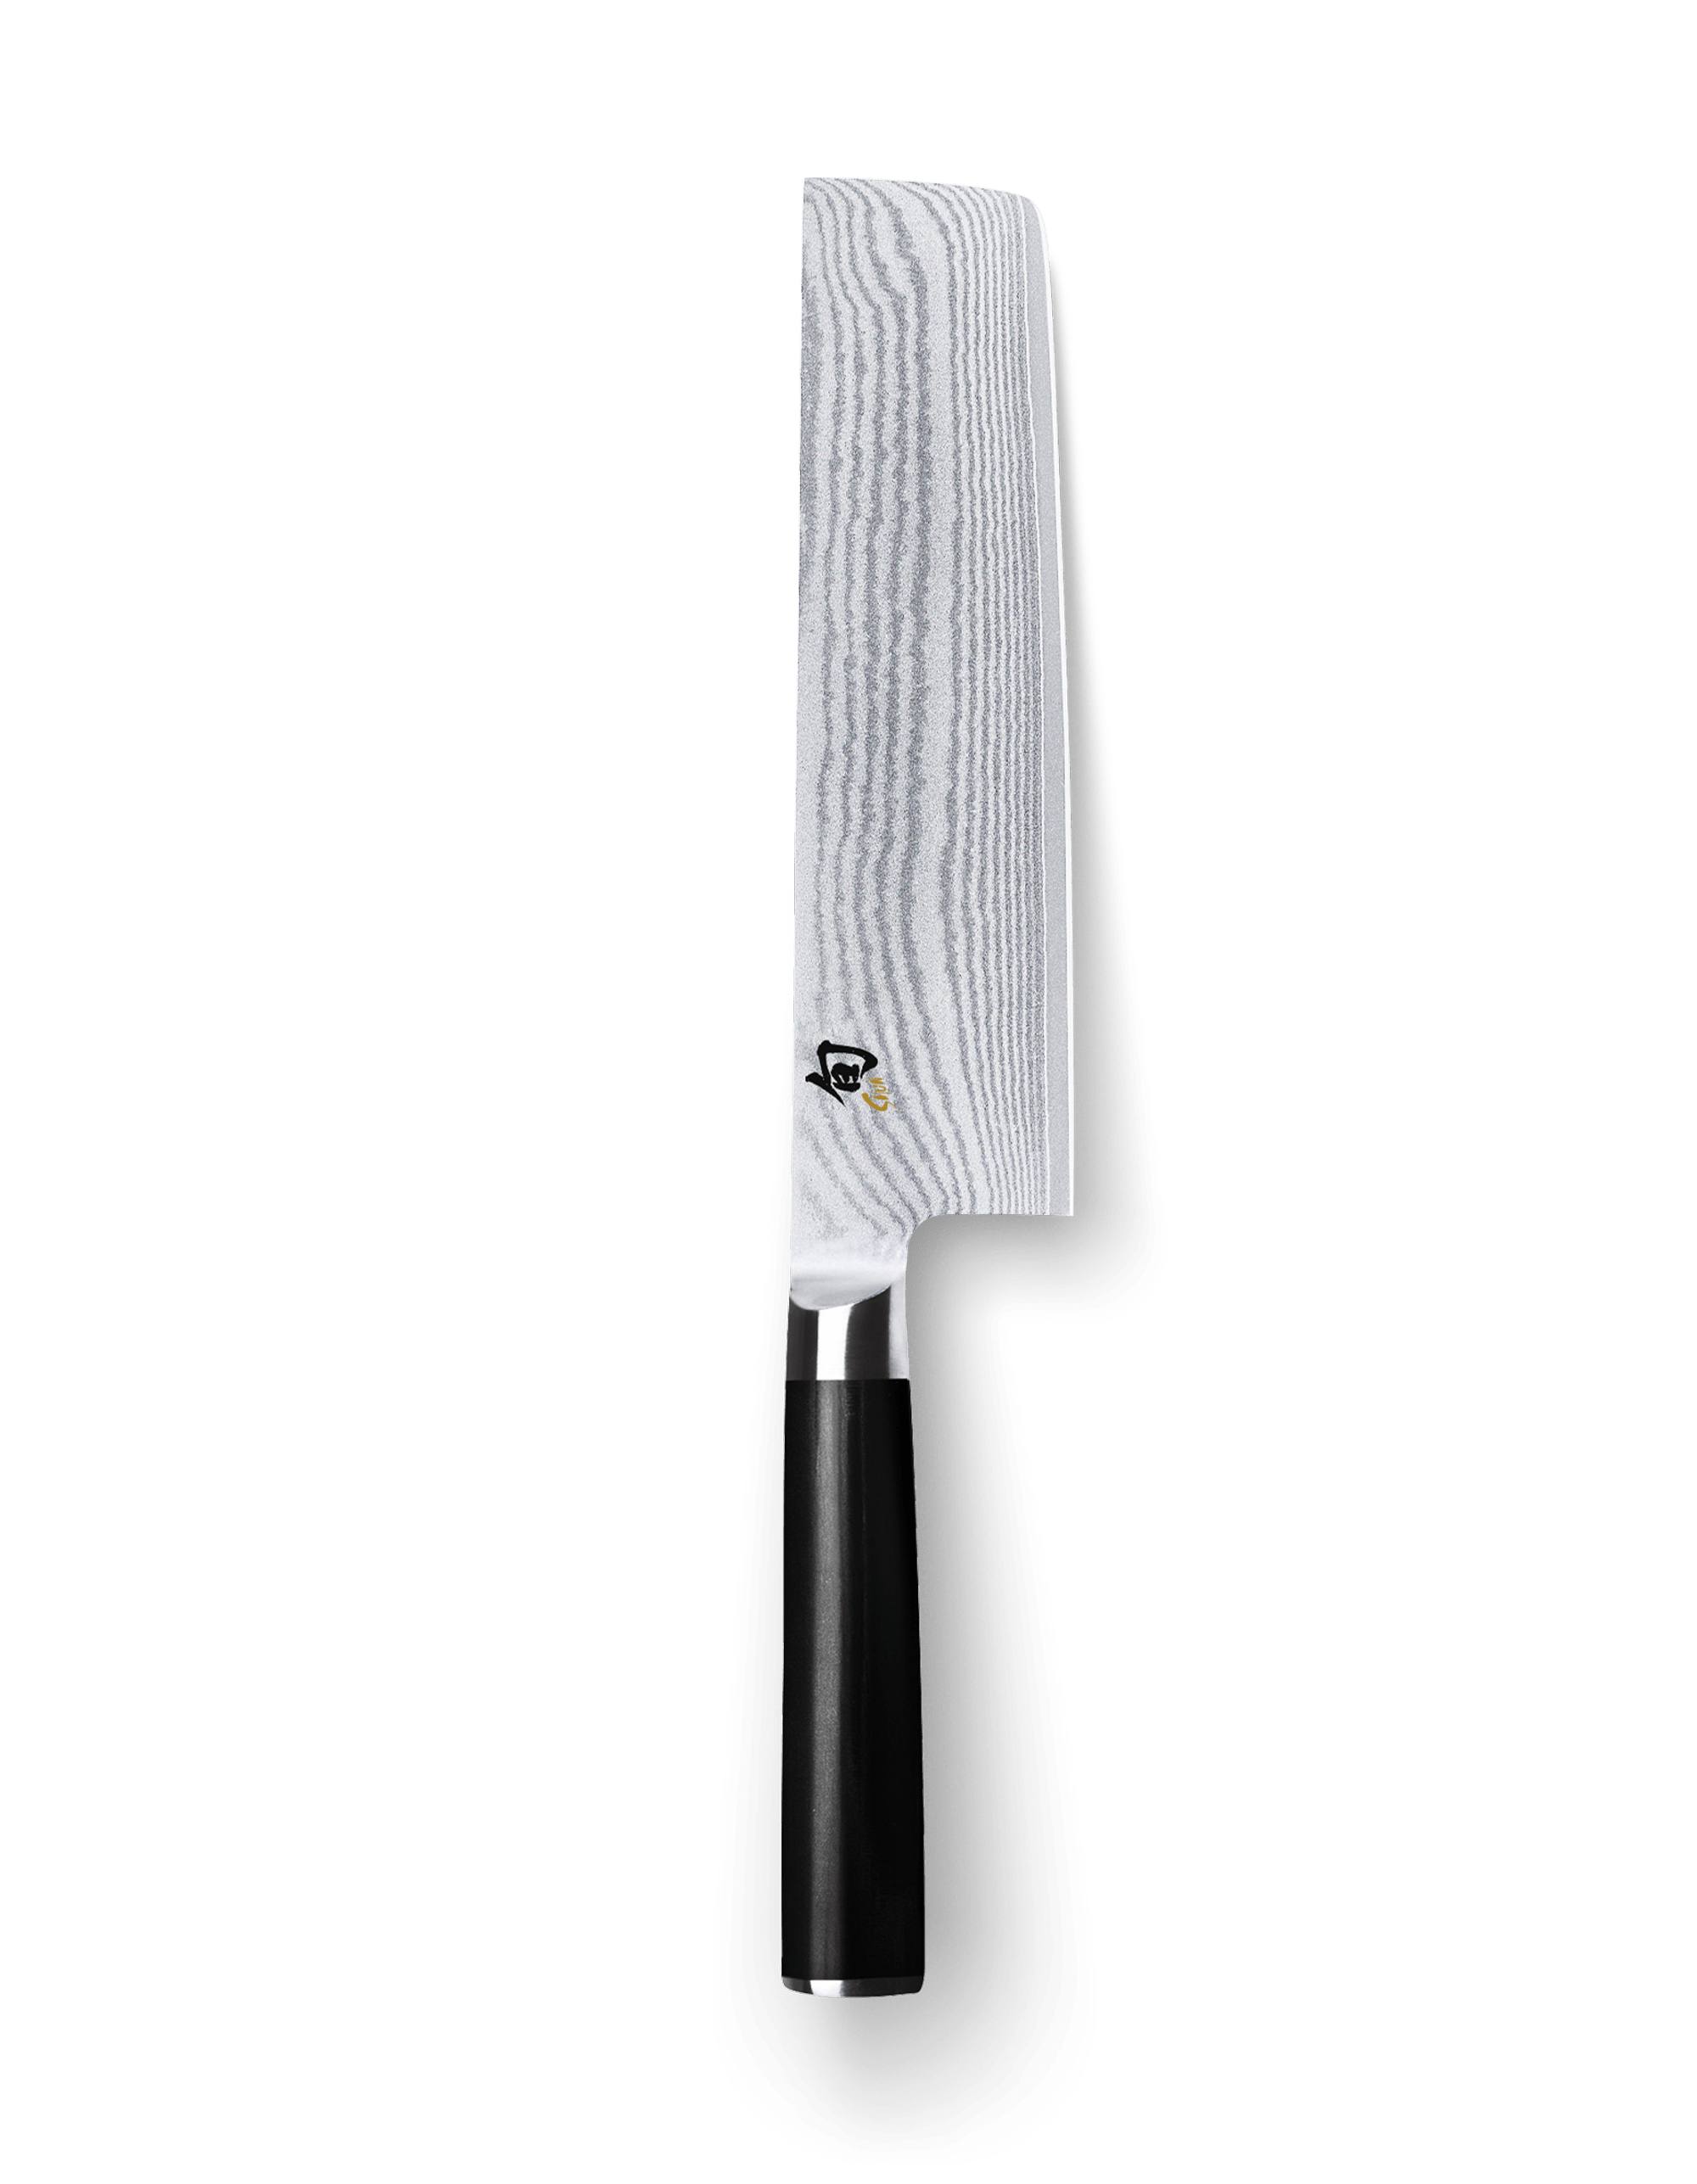 DM.0700-Kai Shun Damascus Japanese paring knife